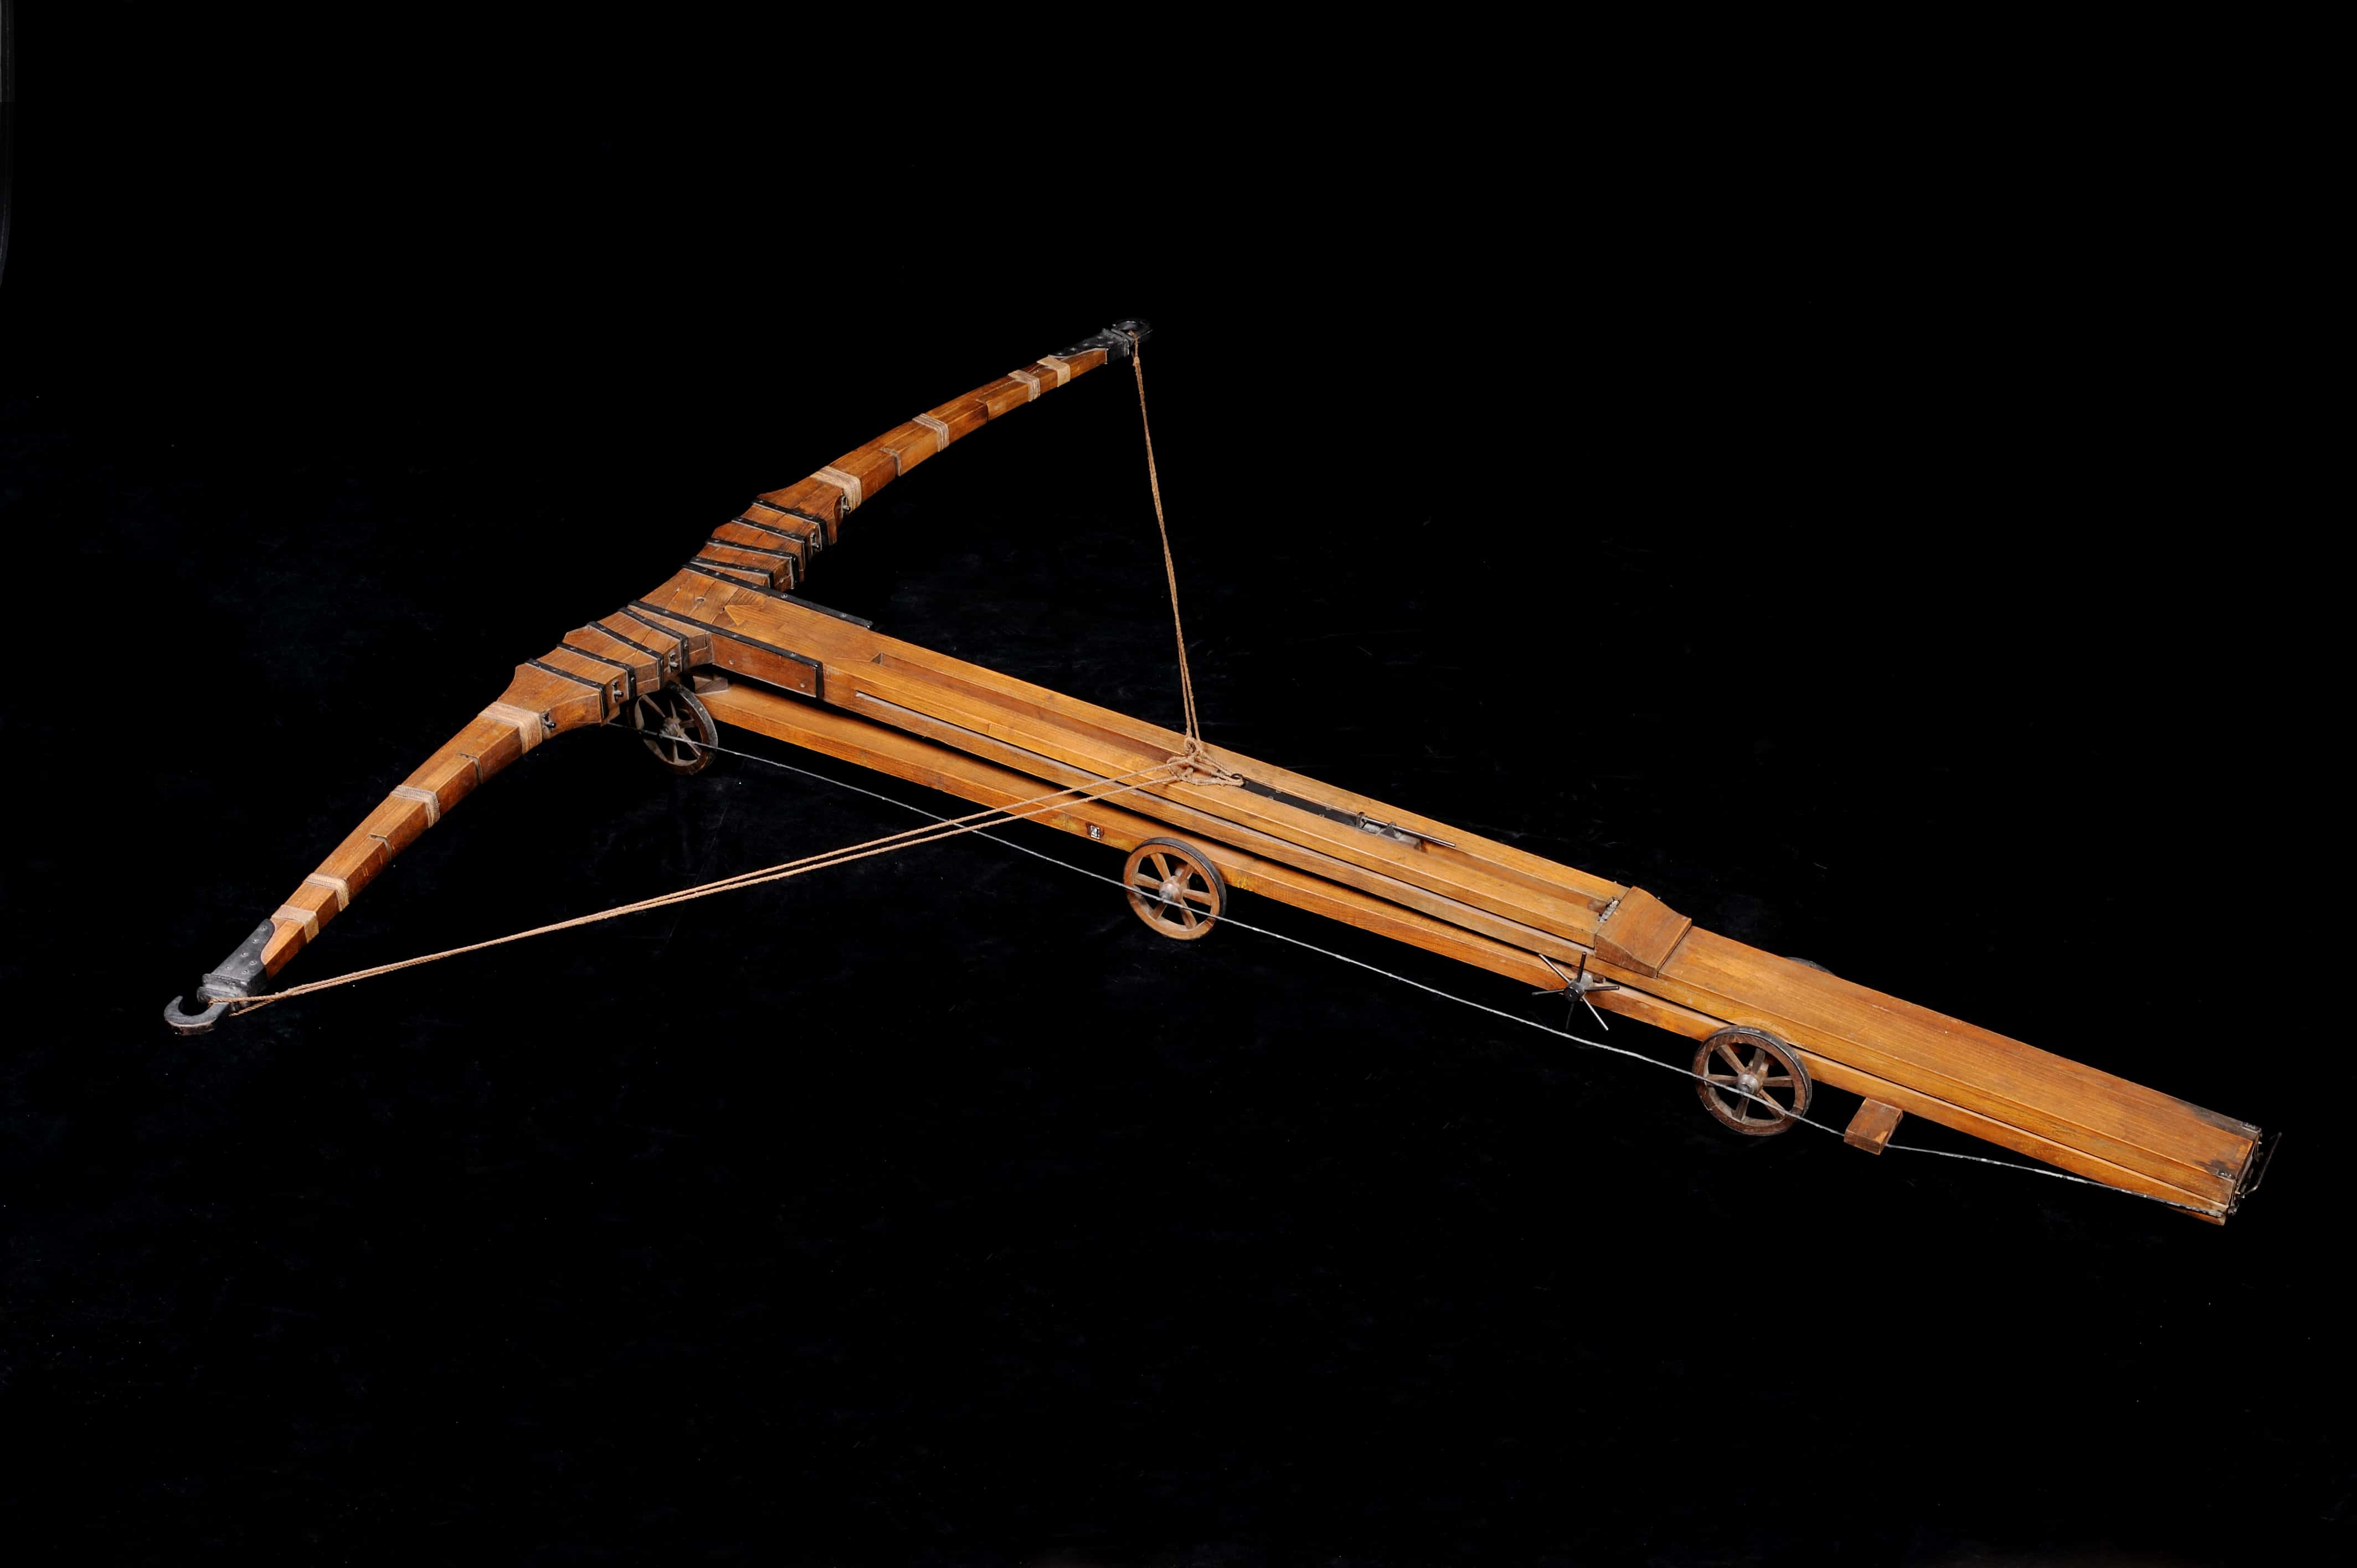 Giant crossbow: Run away! © Archivio Museo Nazionale della Scienza e della Tecnologia Leonardo da Vinci – Alessandro Nassiri 